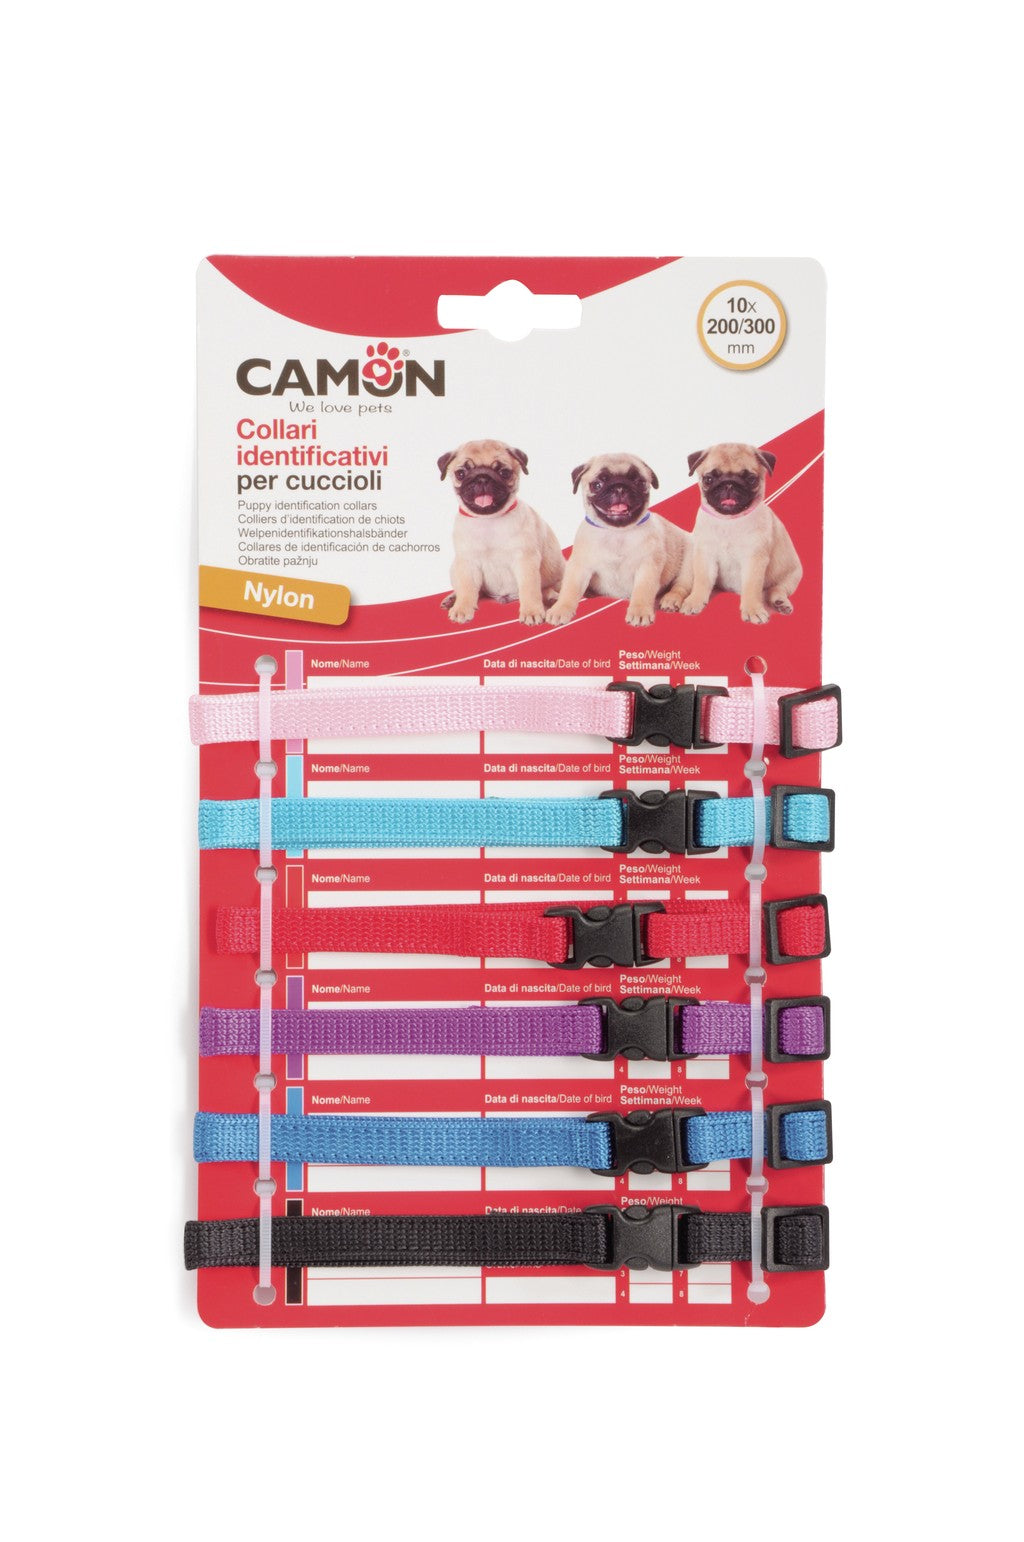 Camon Collari identificativi per cuccioli con sgancio di sicurezza - DC0331 - 10x200/300 mm